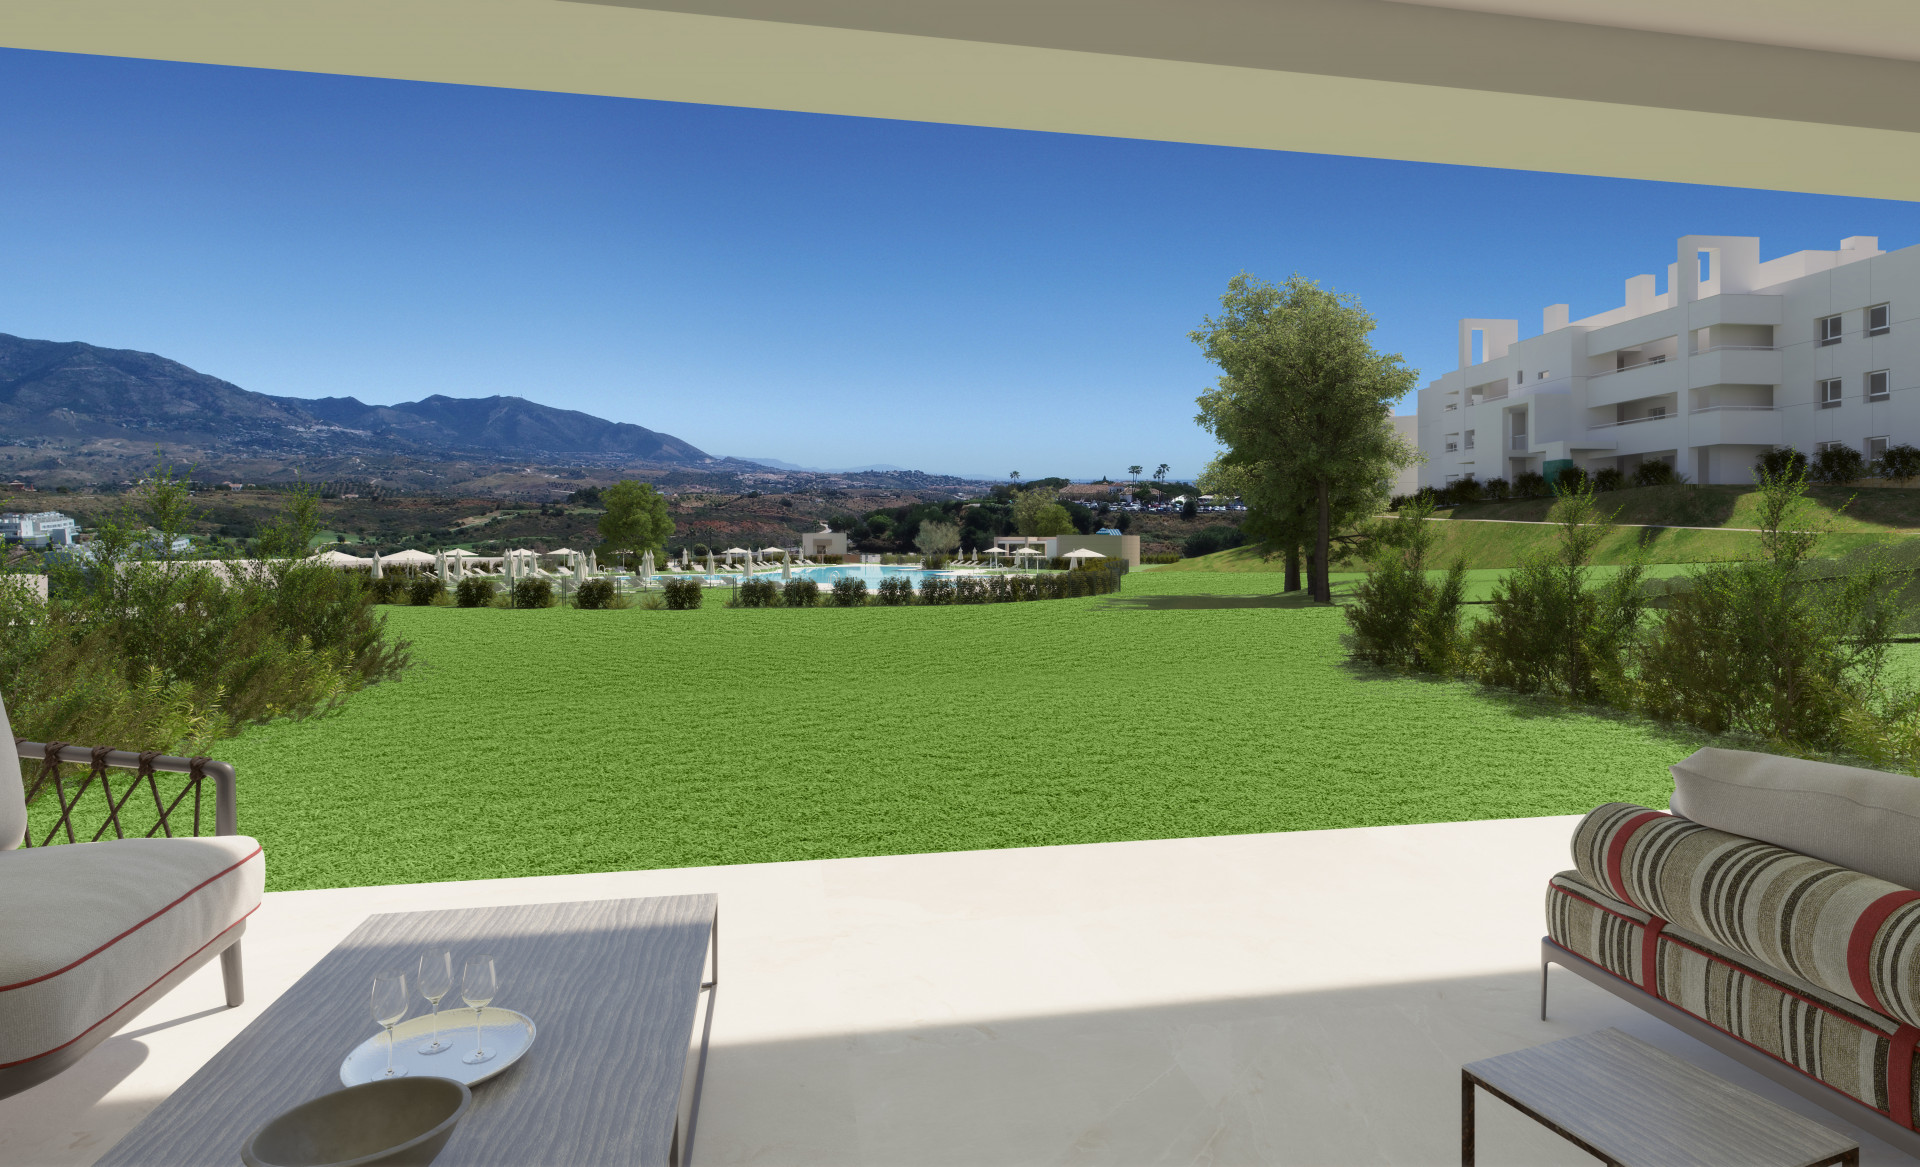 Three bedroom ground floor flat wit terrace in La Cala Golf Resort in Mijas. | Image 8